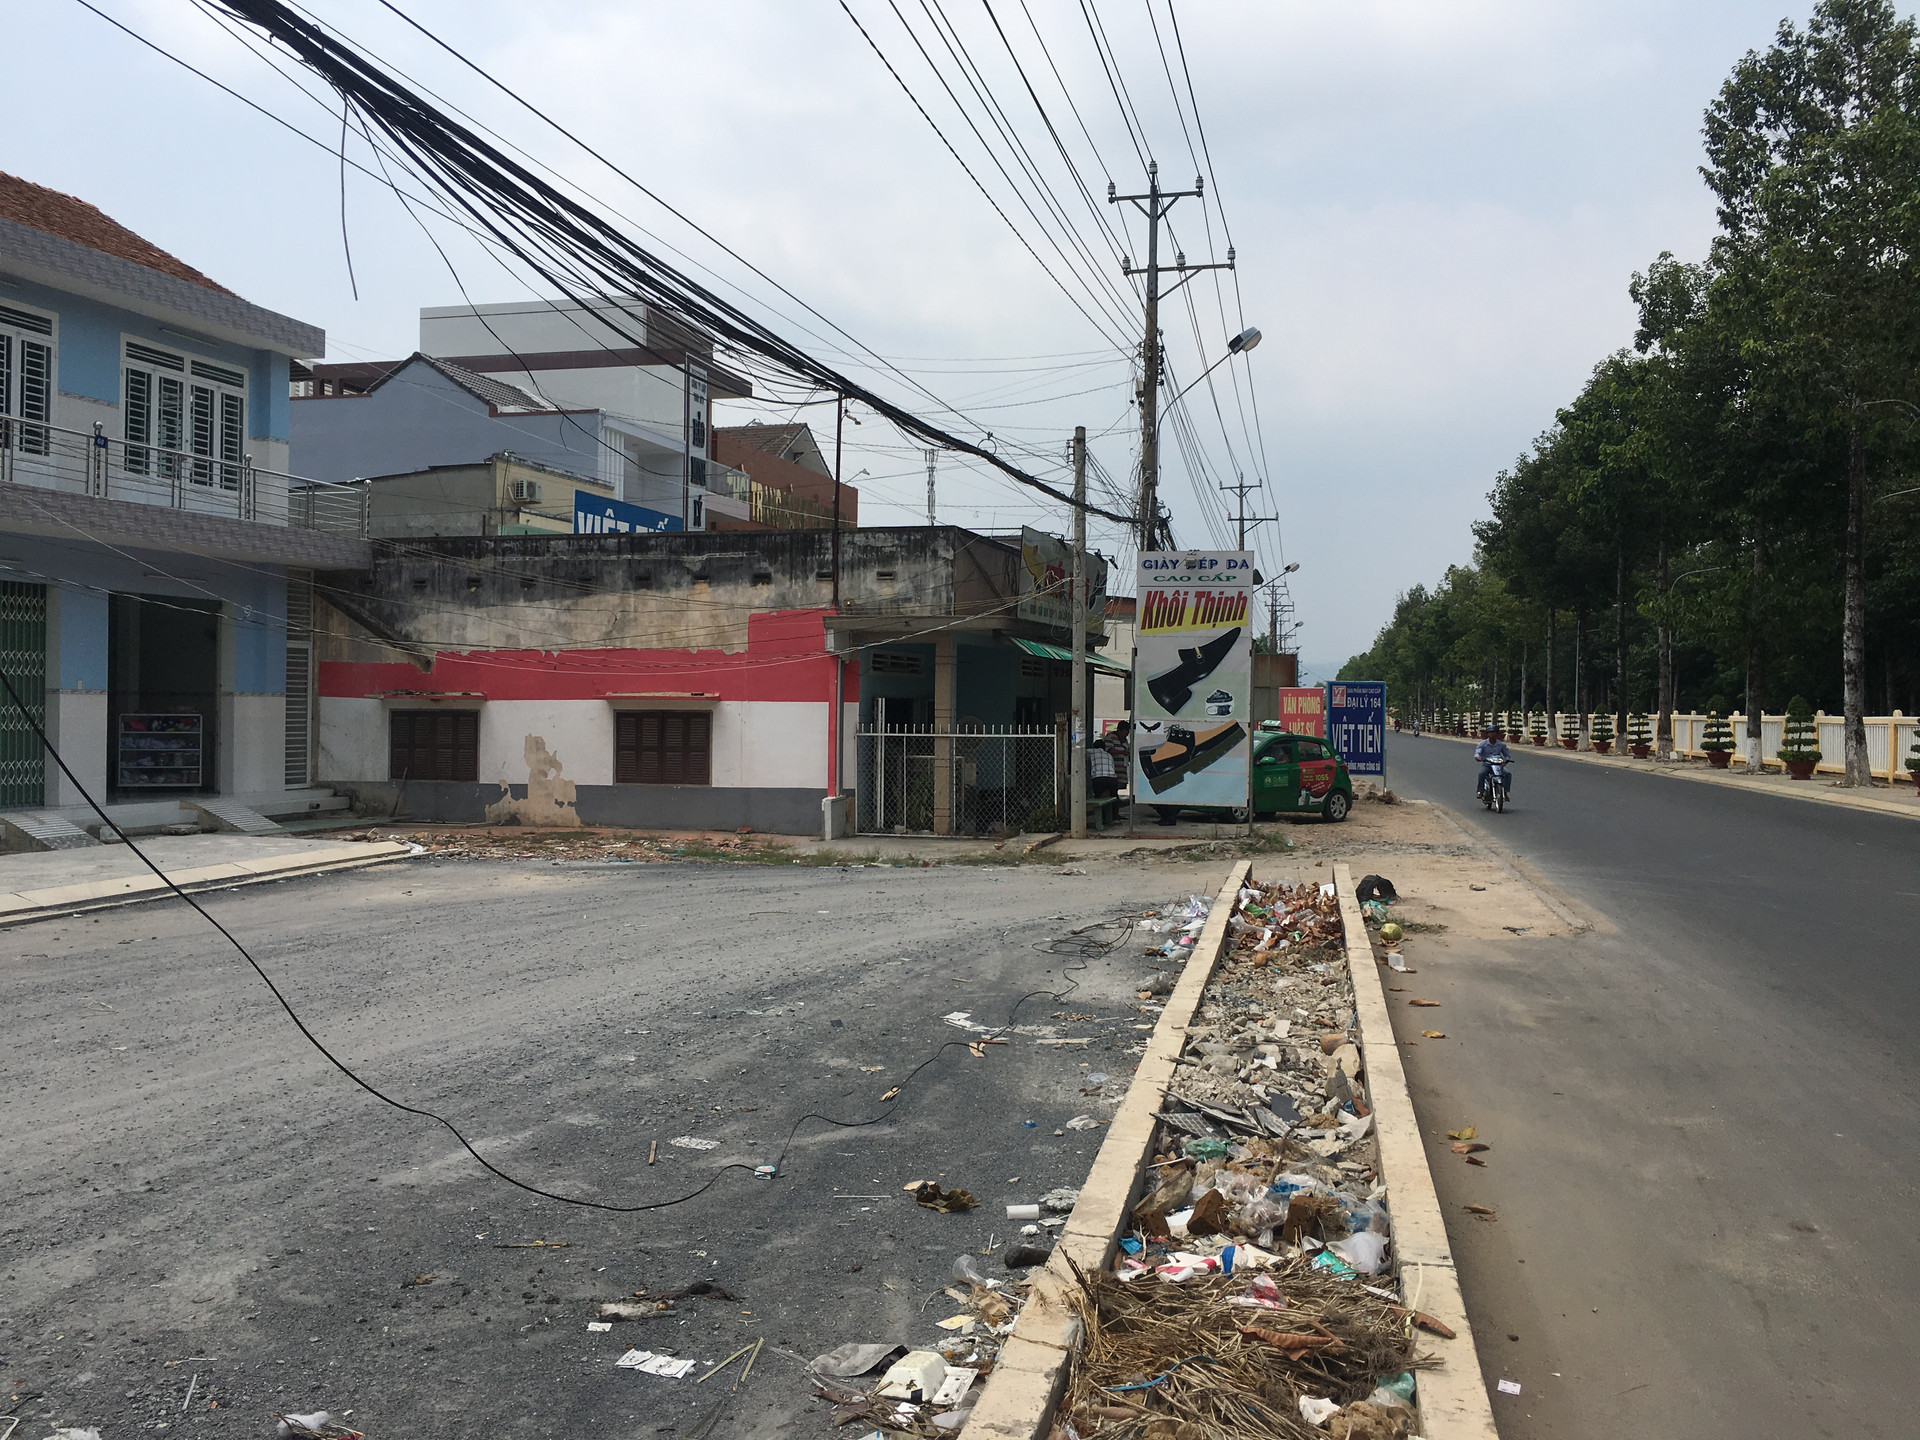 Huyện Hoà Thành-Tây Ninh: Quyết định thu hồi đất chưa hợp lòng dân